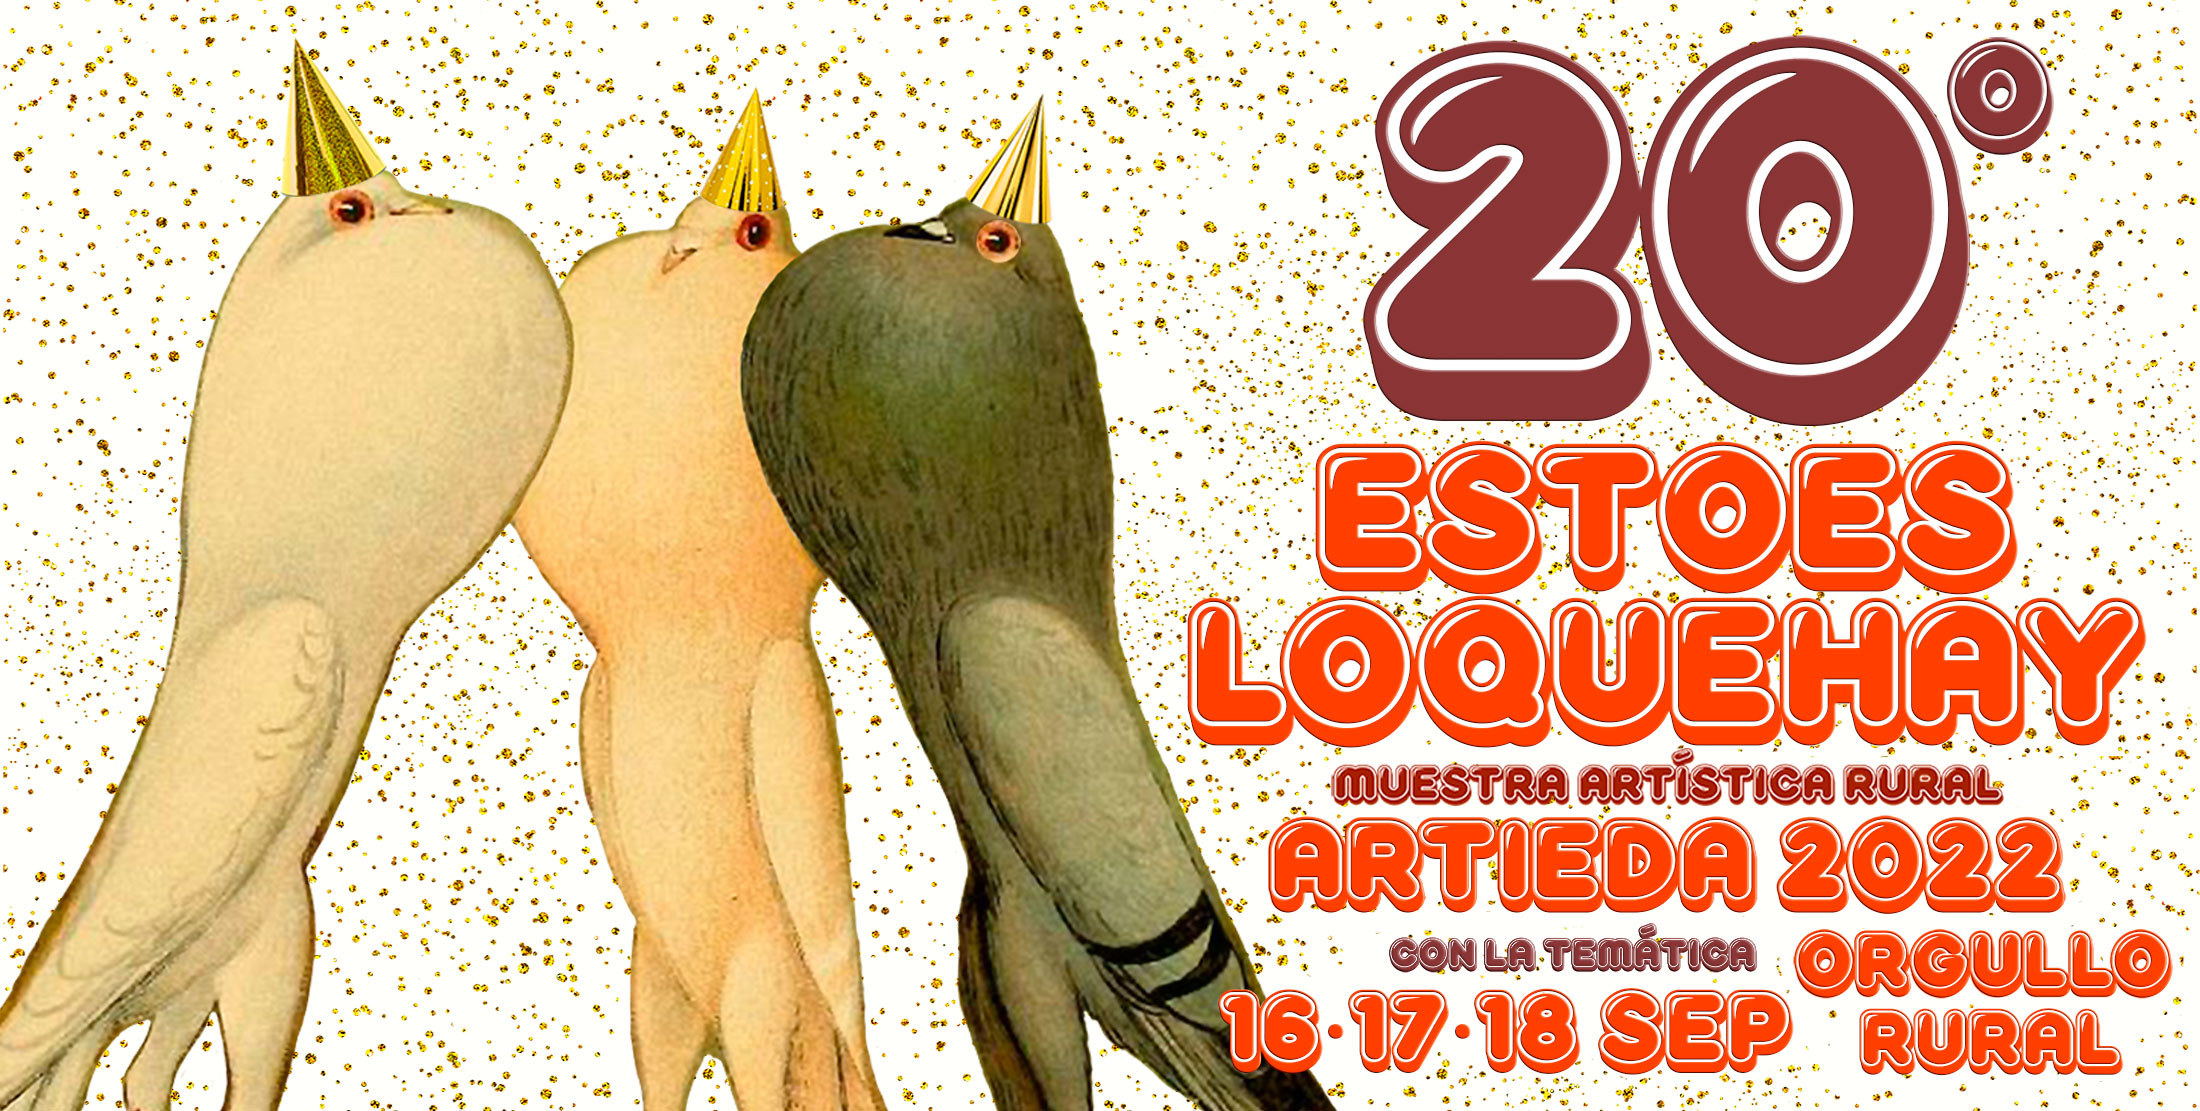 La Muestra artística rural ‘Estoesloquehay’ celebrará su 20ª edición en Artieda 